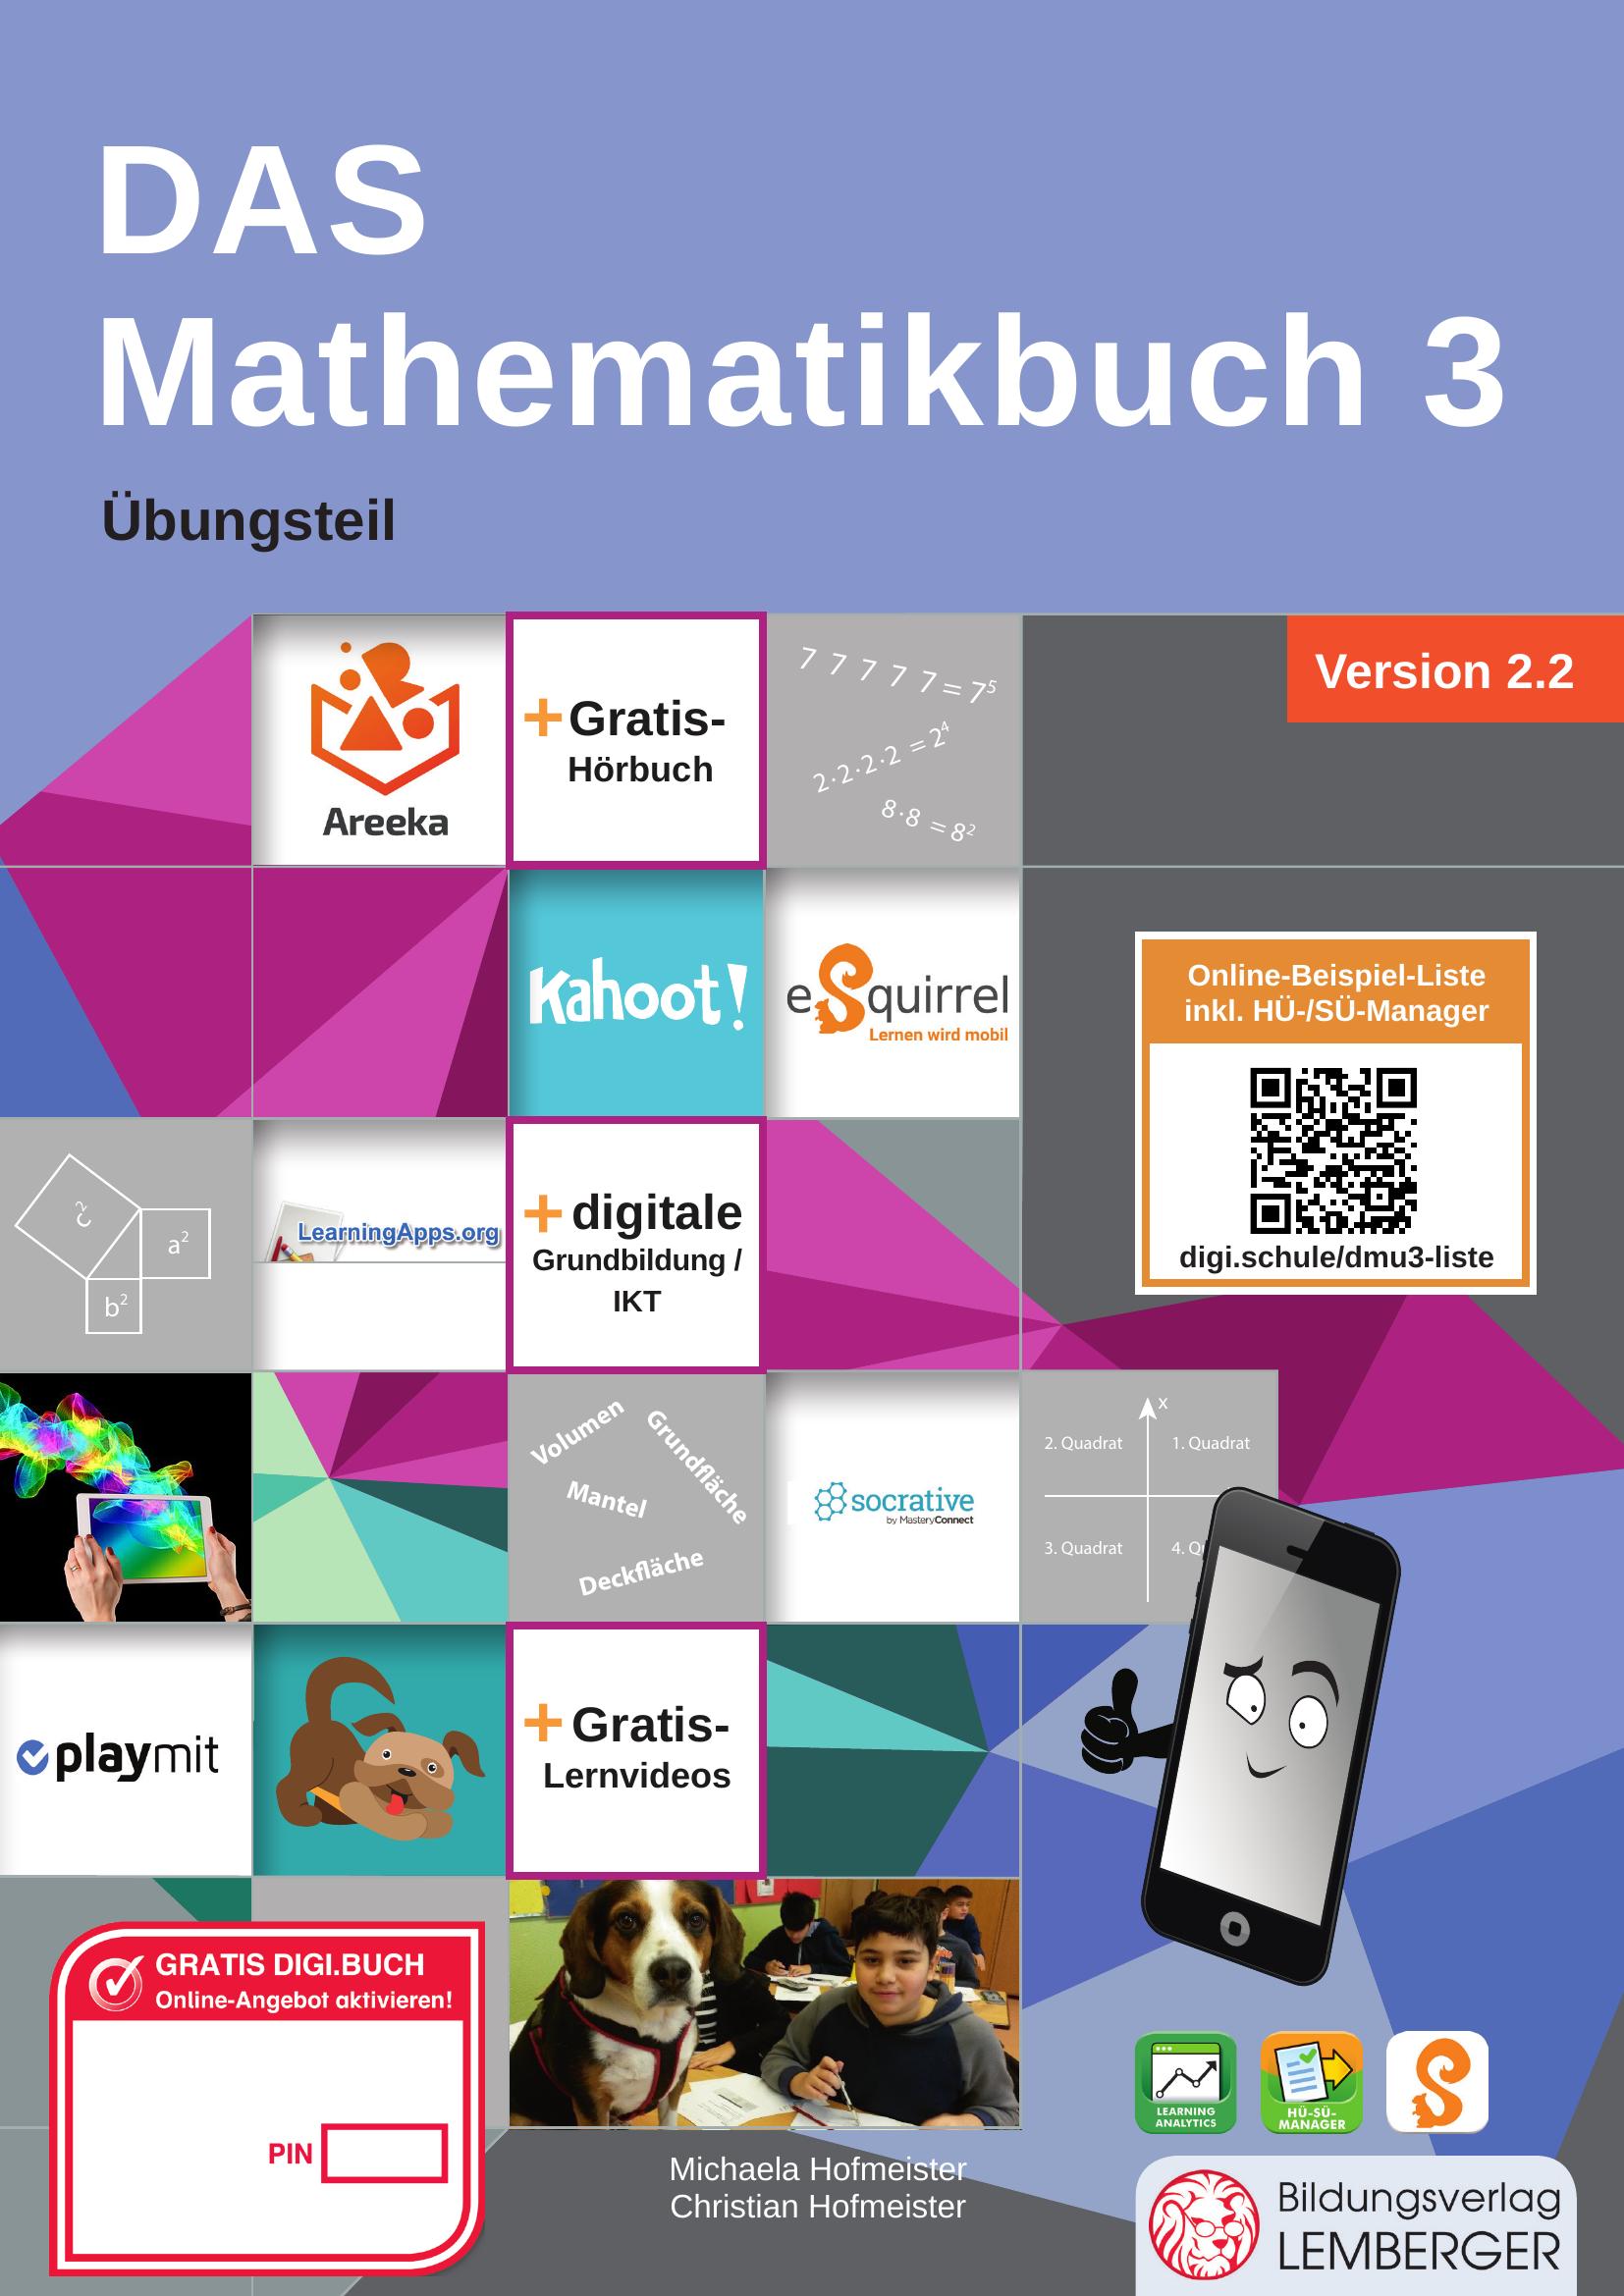 DAS Mathematikbuch 3 IKT – Übungsteil v2.2